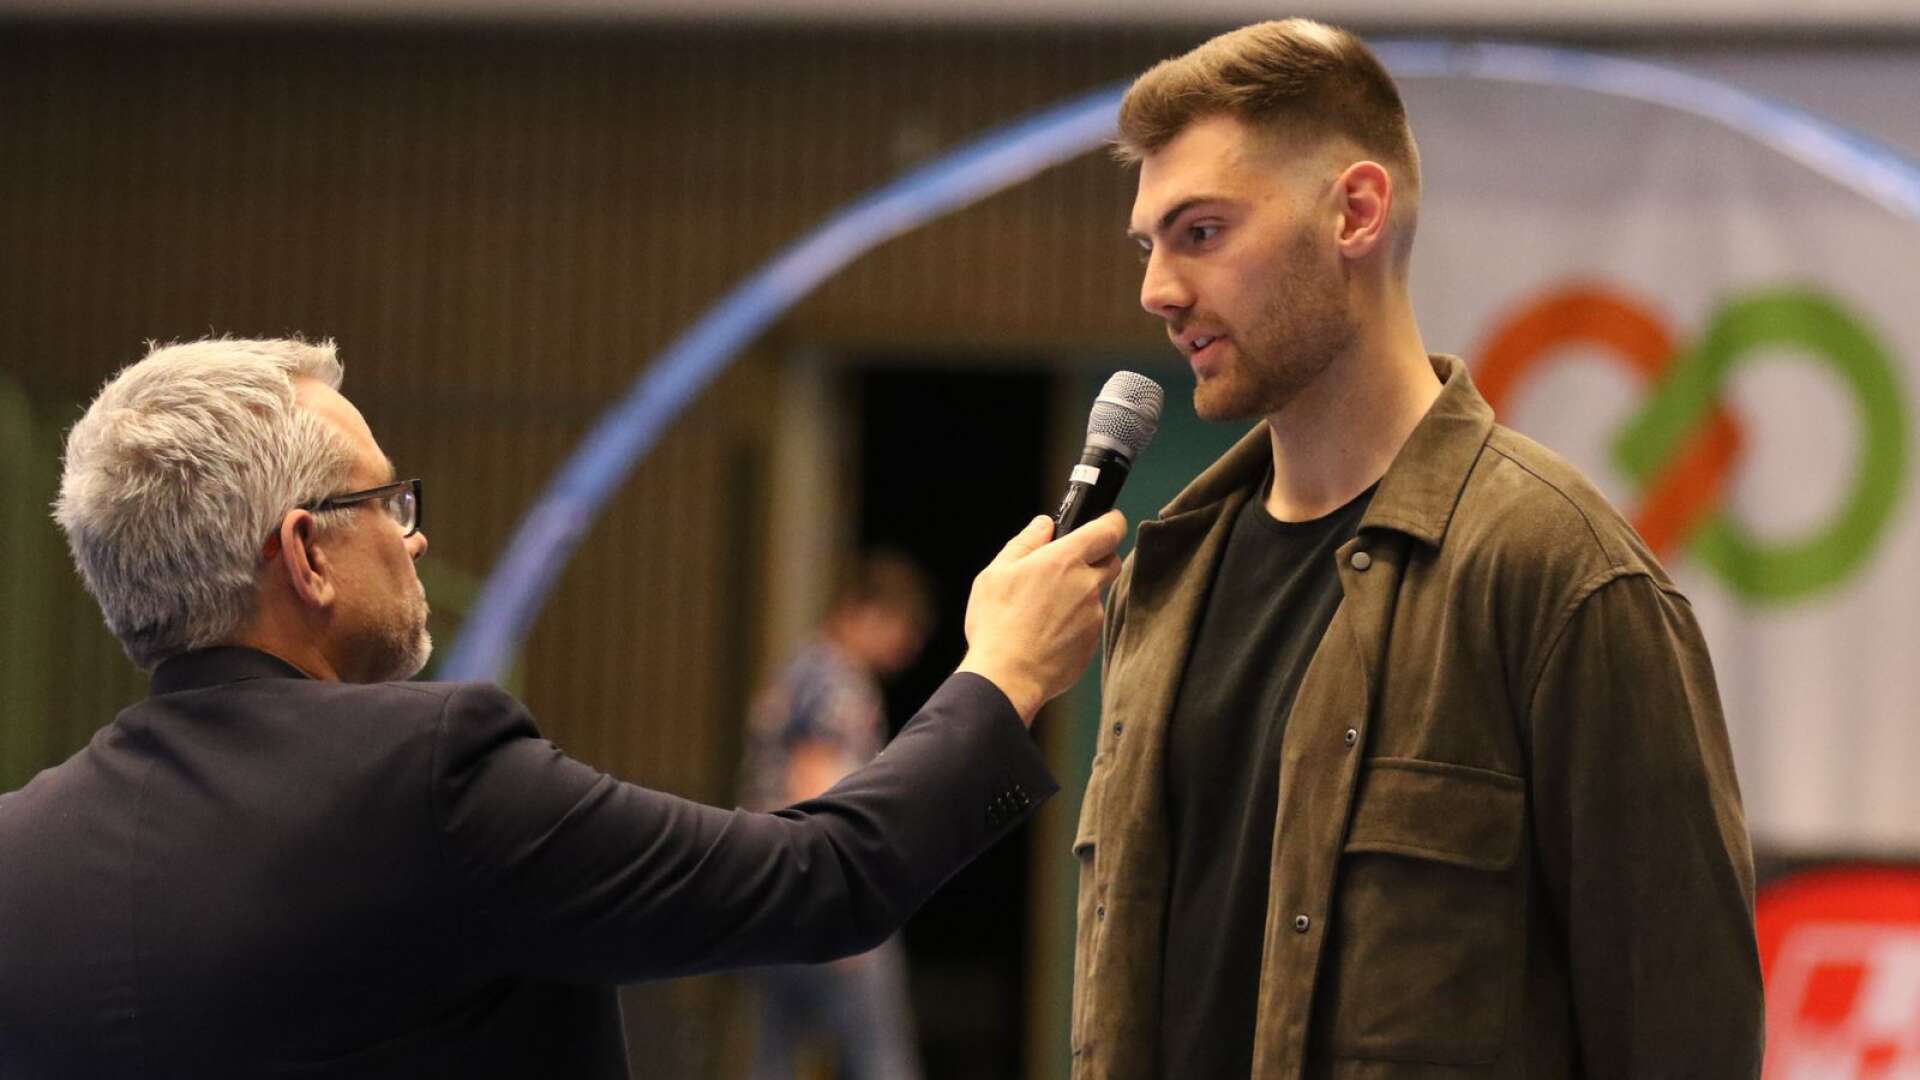 Jack Thurin intervjuad av IFK Skövdes klubbchef Johan Gustavsson i samband med IFK:s hemmamatch mot Aranäs i förra veckan.